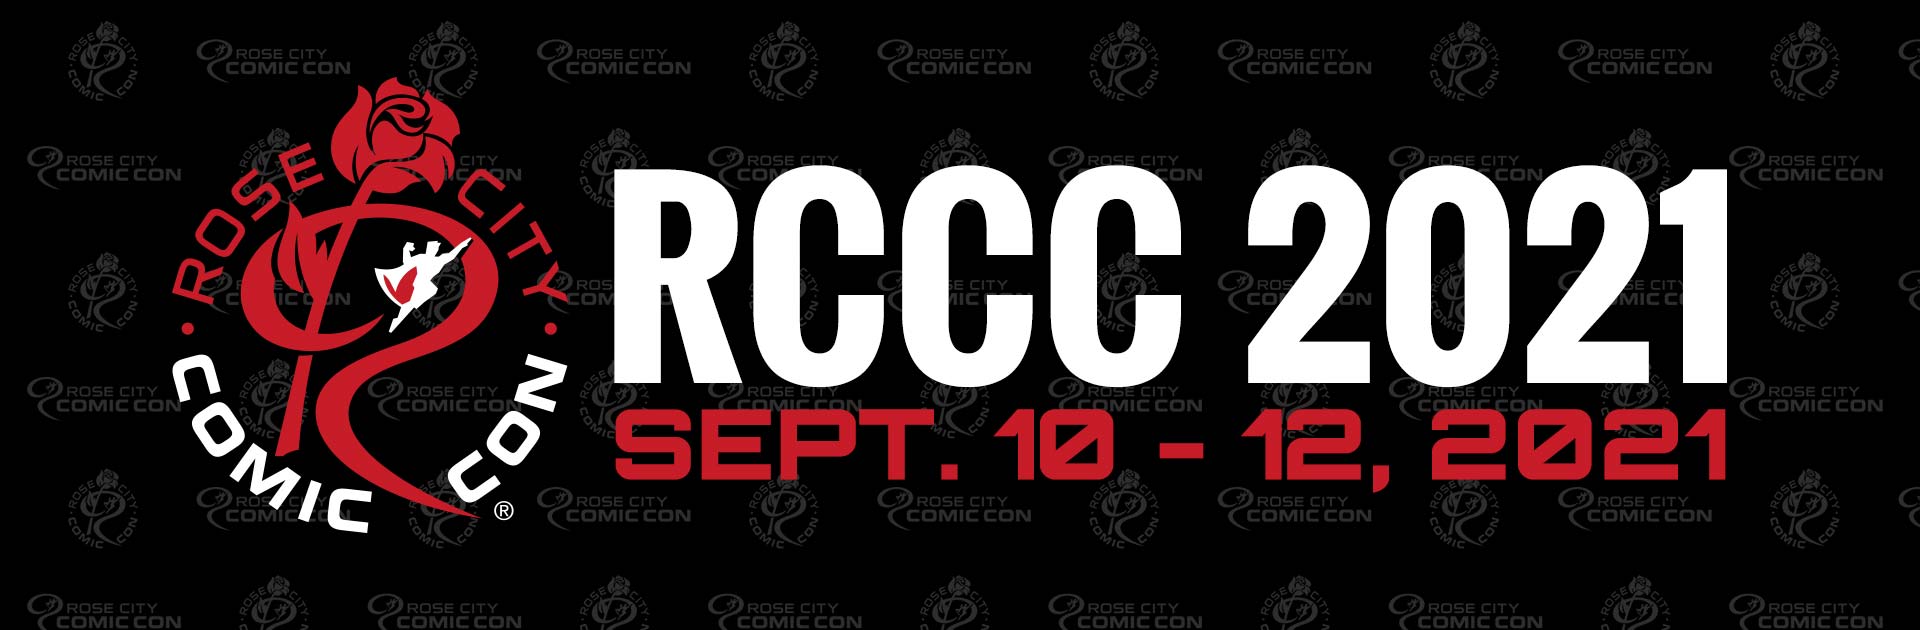 Rose City Comic Con Portland’s premier popculture event!